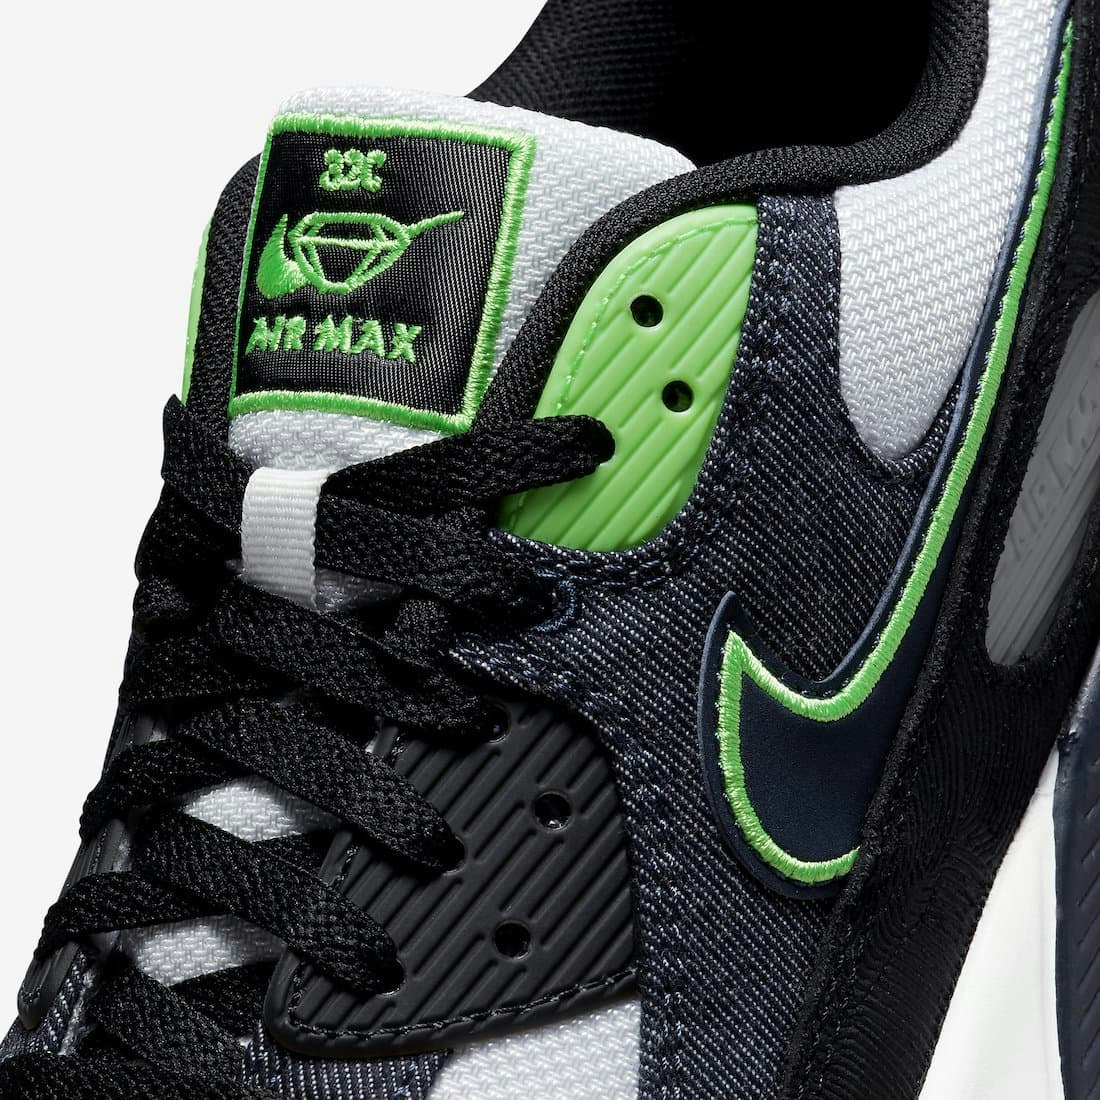 Nike Air Max 90 SE "Scream Green"